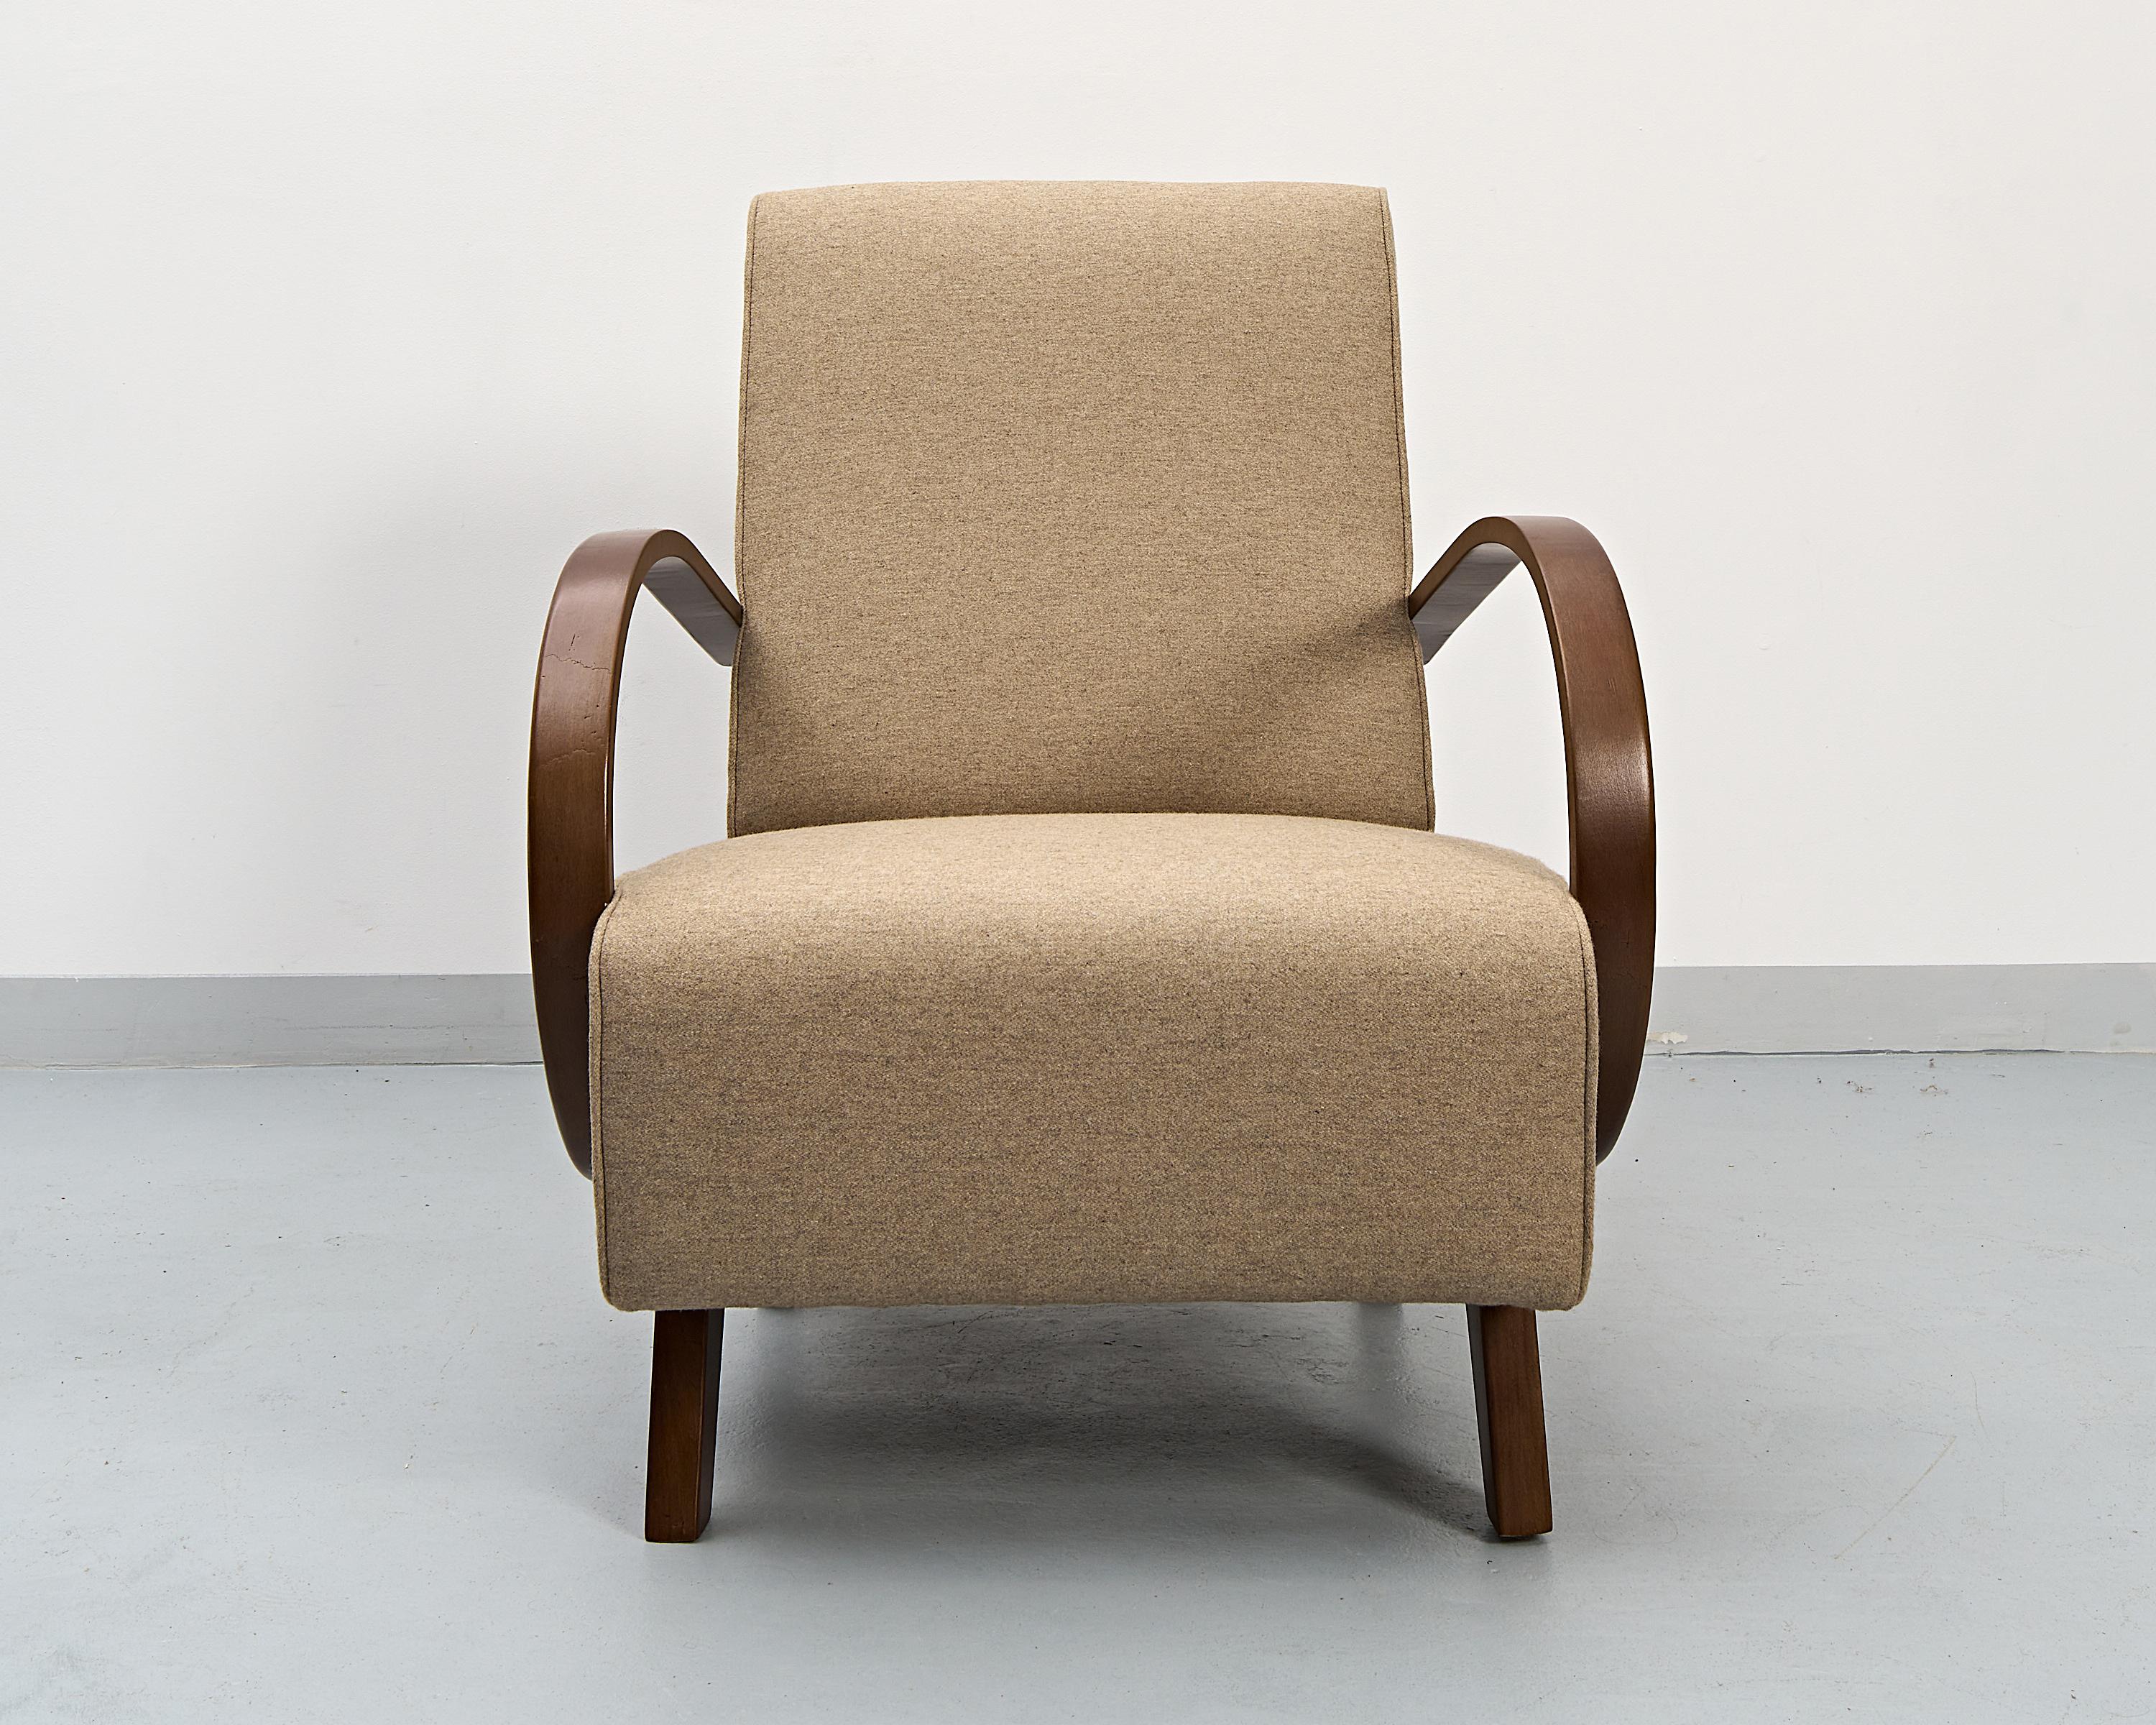 Un fauteuil conçu par le célèbre designer tchèque Jindřich Halabala. Produit dans les années 1930.
Cadre en hêtre courbé restauré en demi-mat brillant. Sièges recréés et recouverts de tissu de laine artificielle.
Beau travail de restauration.